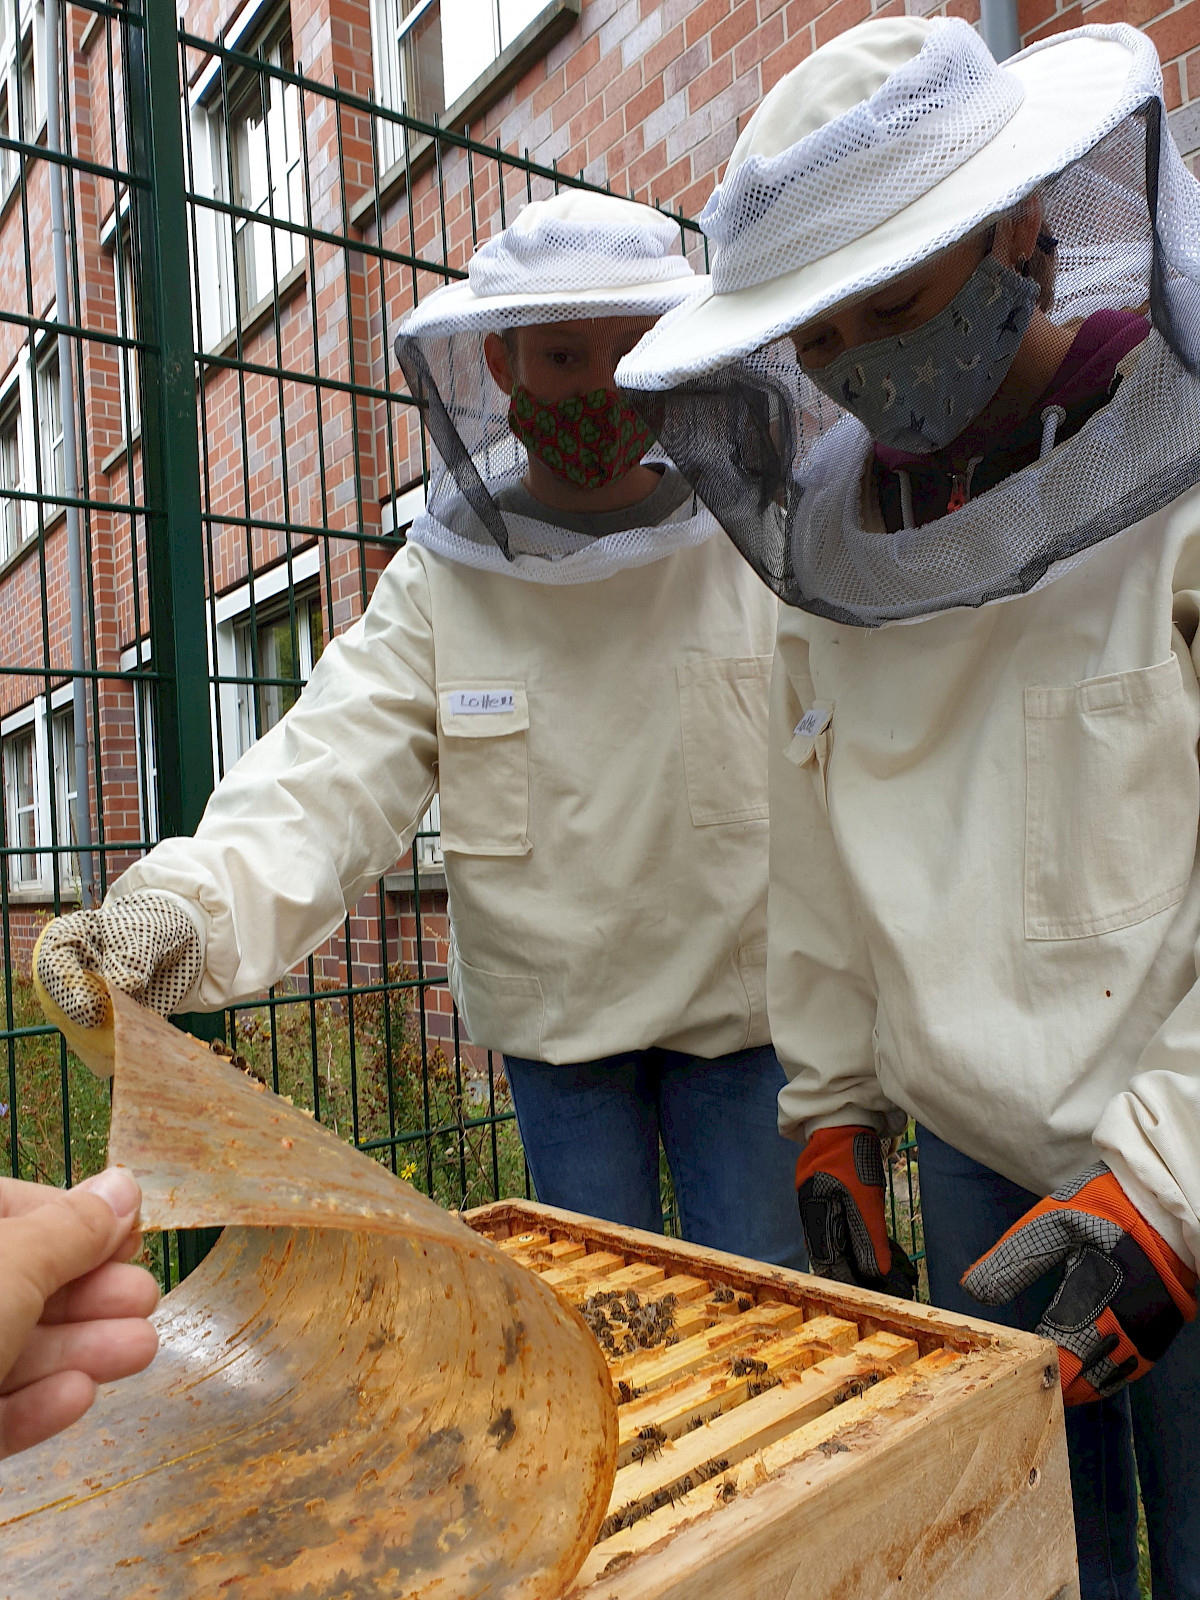 Am Städtischen Gymnasium Straelen versüßt ein ganz besonderes Volk den dortigen Schulalltag. Tausende von Bienen sind das Ein und Alles der Schülergenossenschaft „Honeybee Industries eSG“.